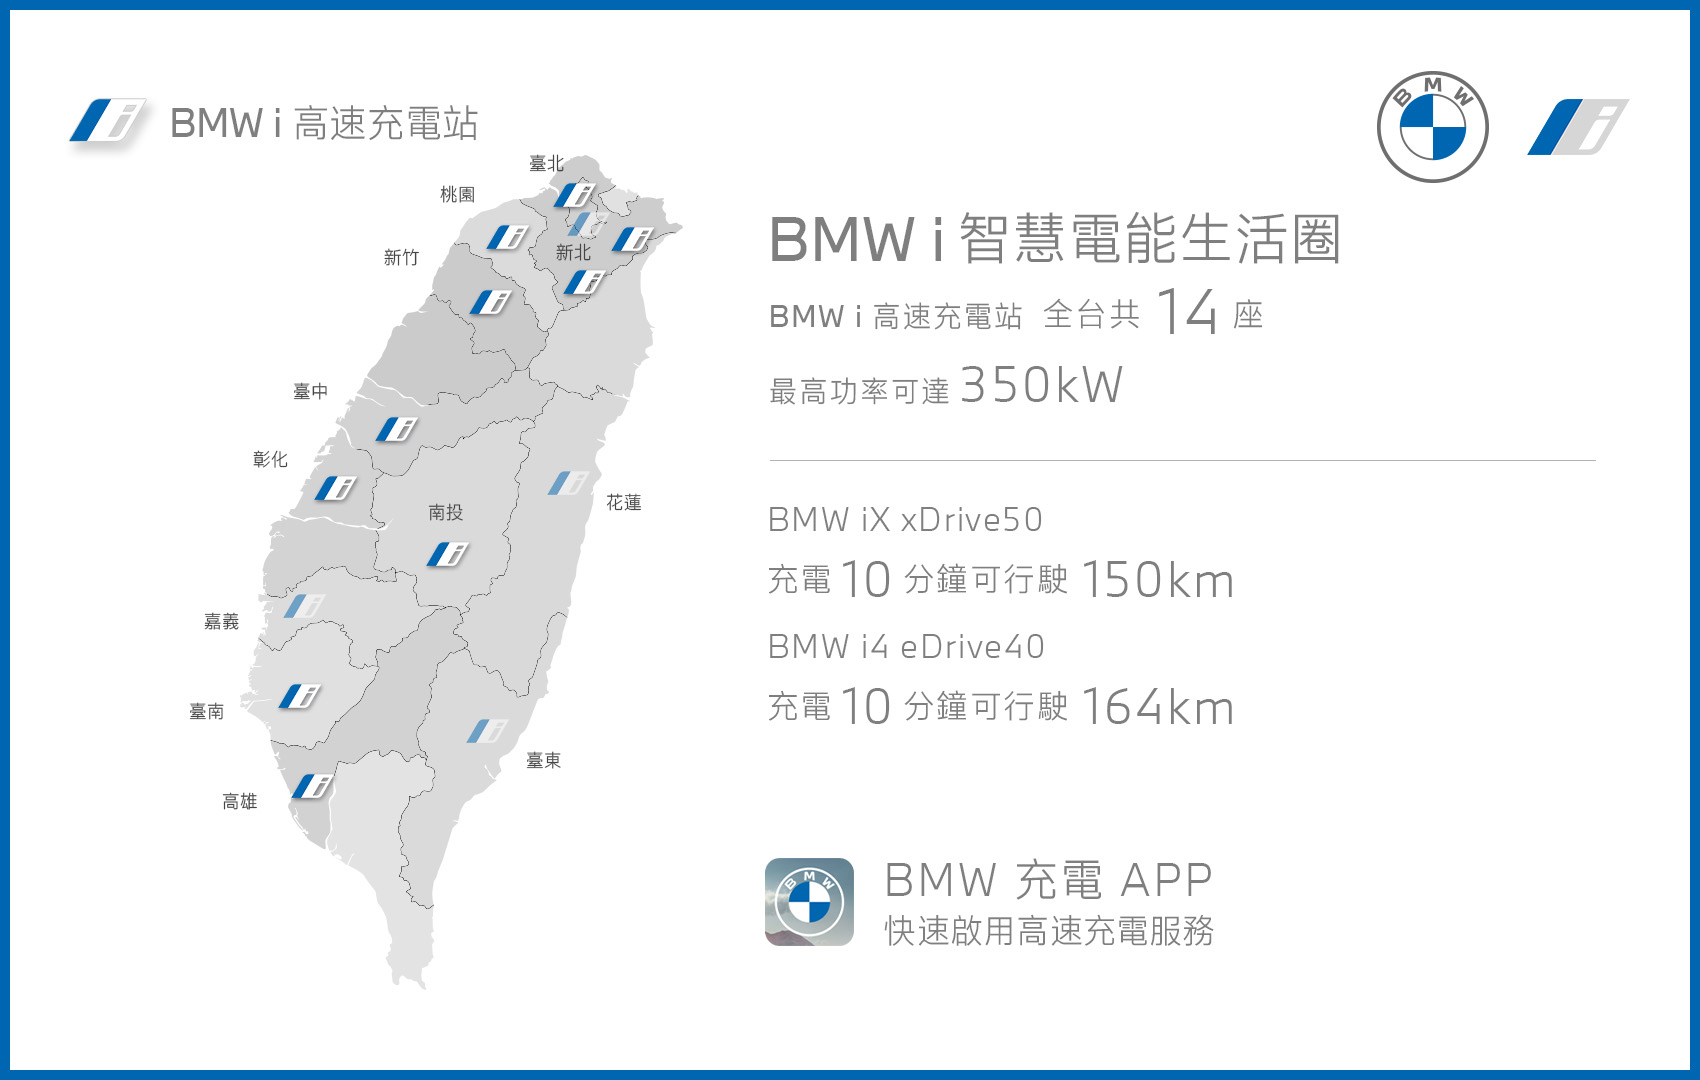 [新聞照片一] BMW總代理汎德以最快的速度導入全新BMW iX與i4等跨世代電能車款，並積極規劃全台電能生活藍圖，攜手全台經銷商陸續已完成共10座全新BMW i高速充電站，暢享純電生活旅.jpg